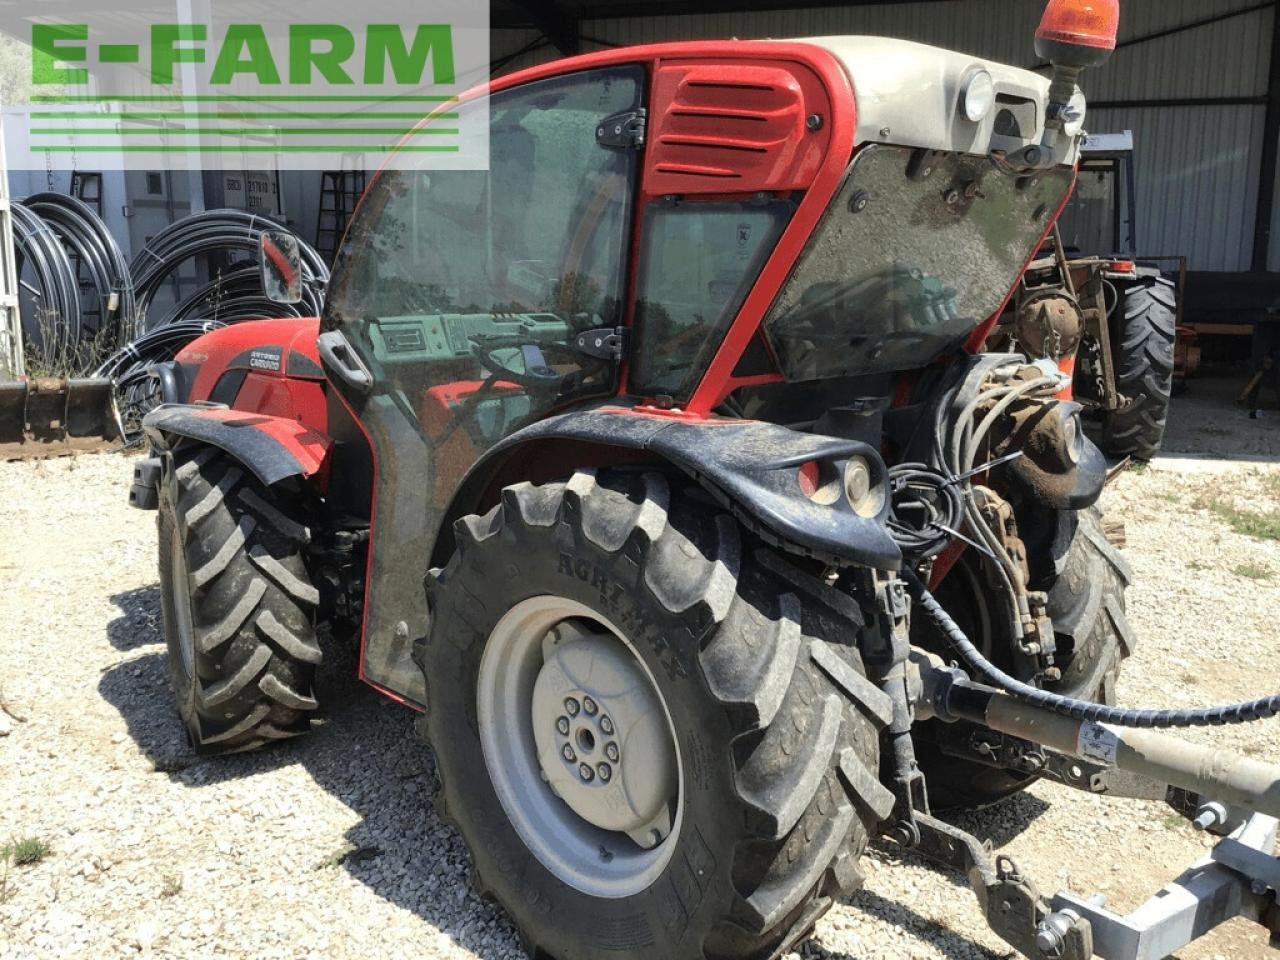 Farm tractor Carraro tgf 7800 s: picture 5